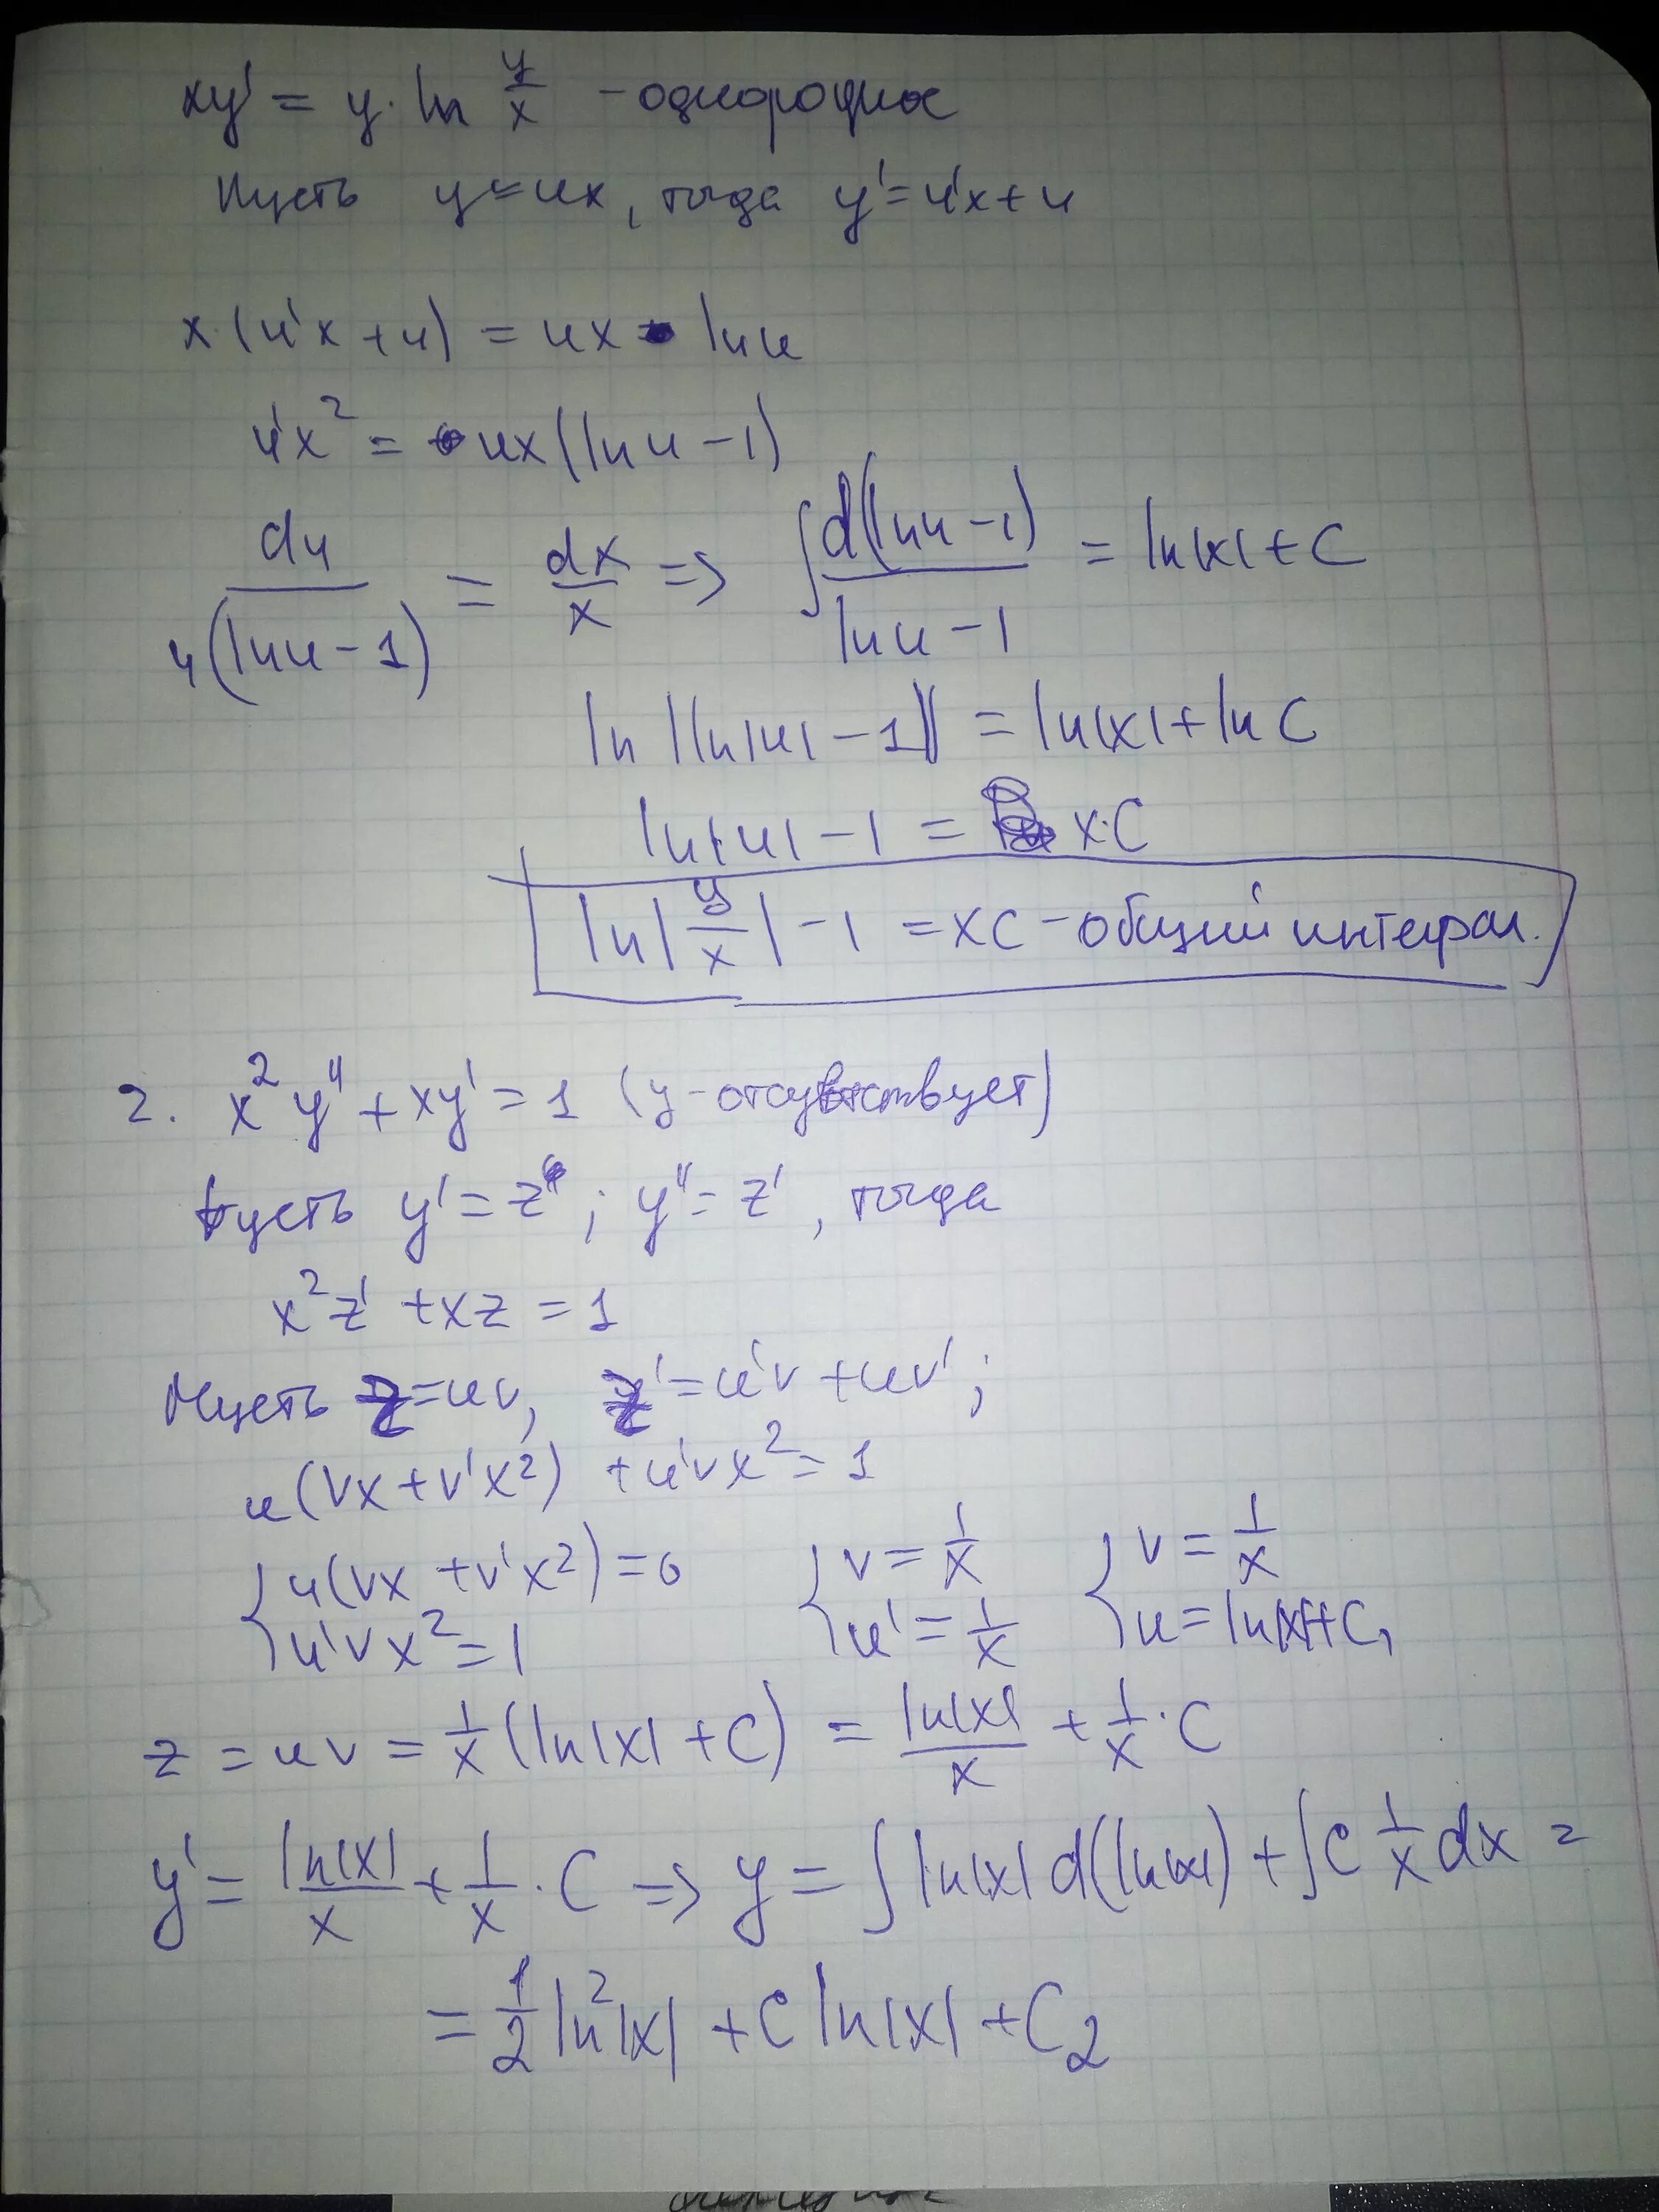 XY Y Y 2 Ln x. Дифференциальное уравнение y=y'LNY'. Решить дифференциальное уравнение XY'=Y Ln y. Найдите общий интеграл дифференциального уравнения.